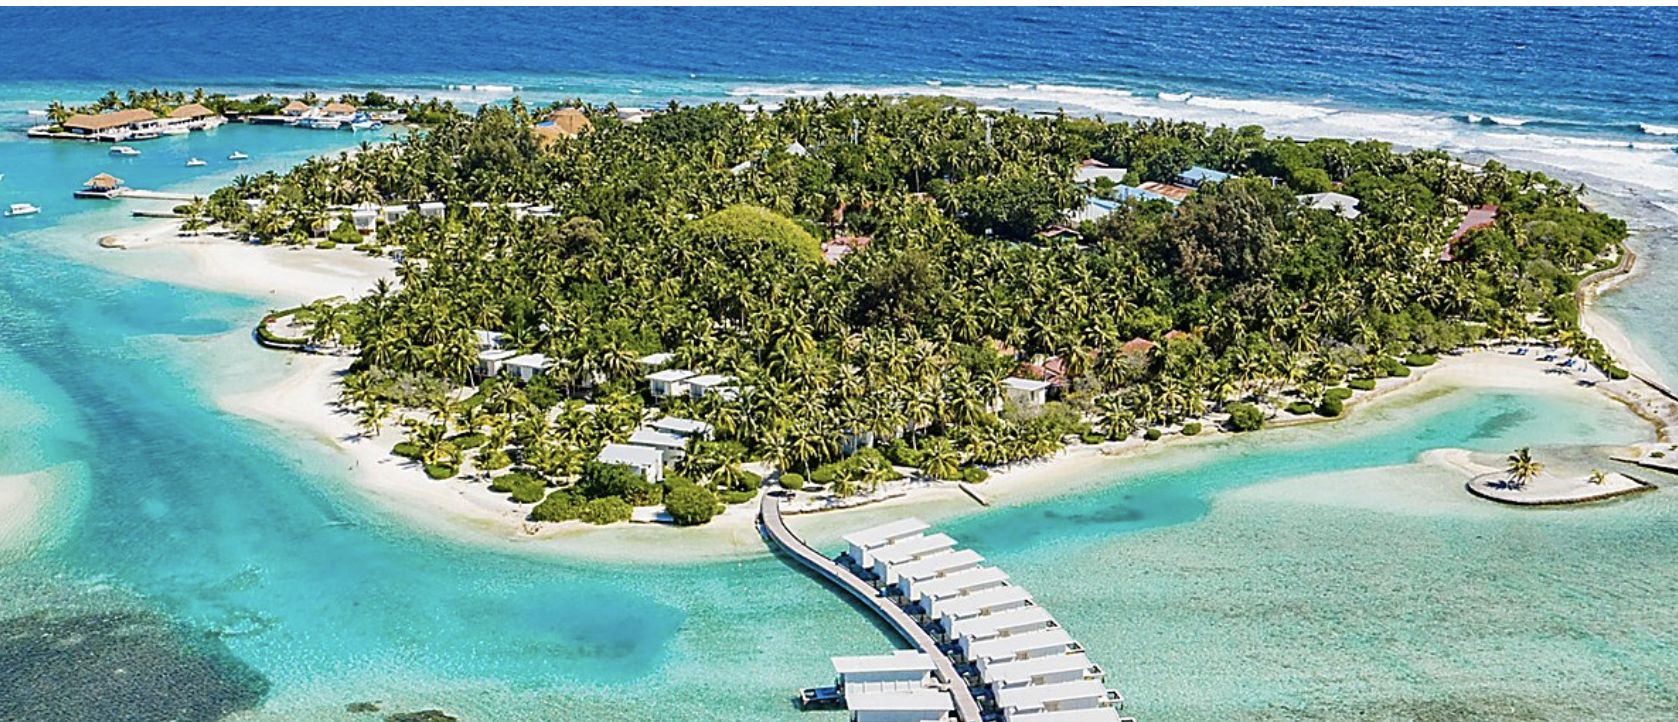 Island in Maldives